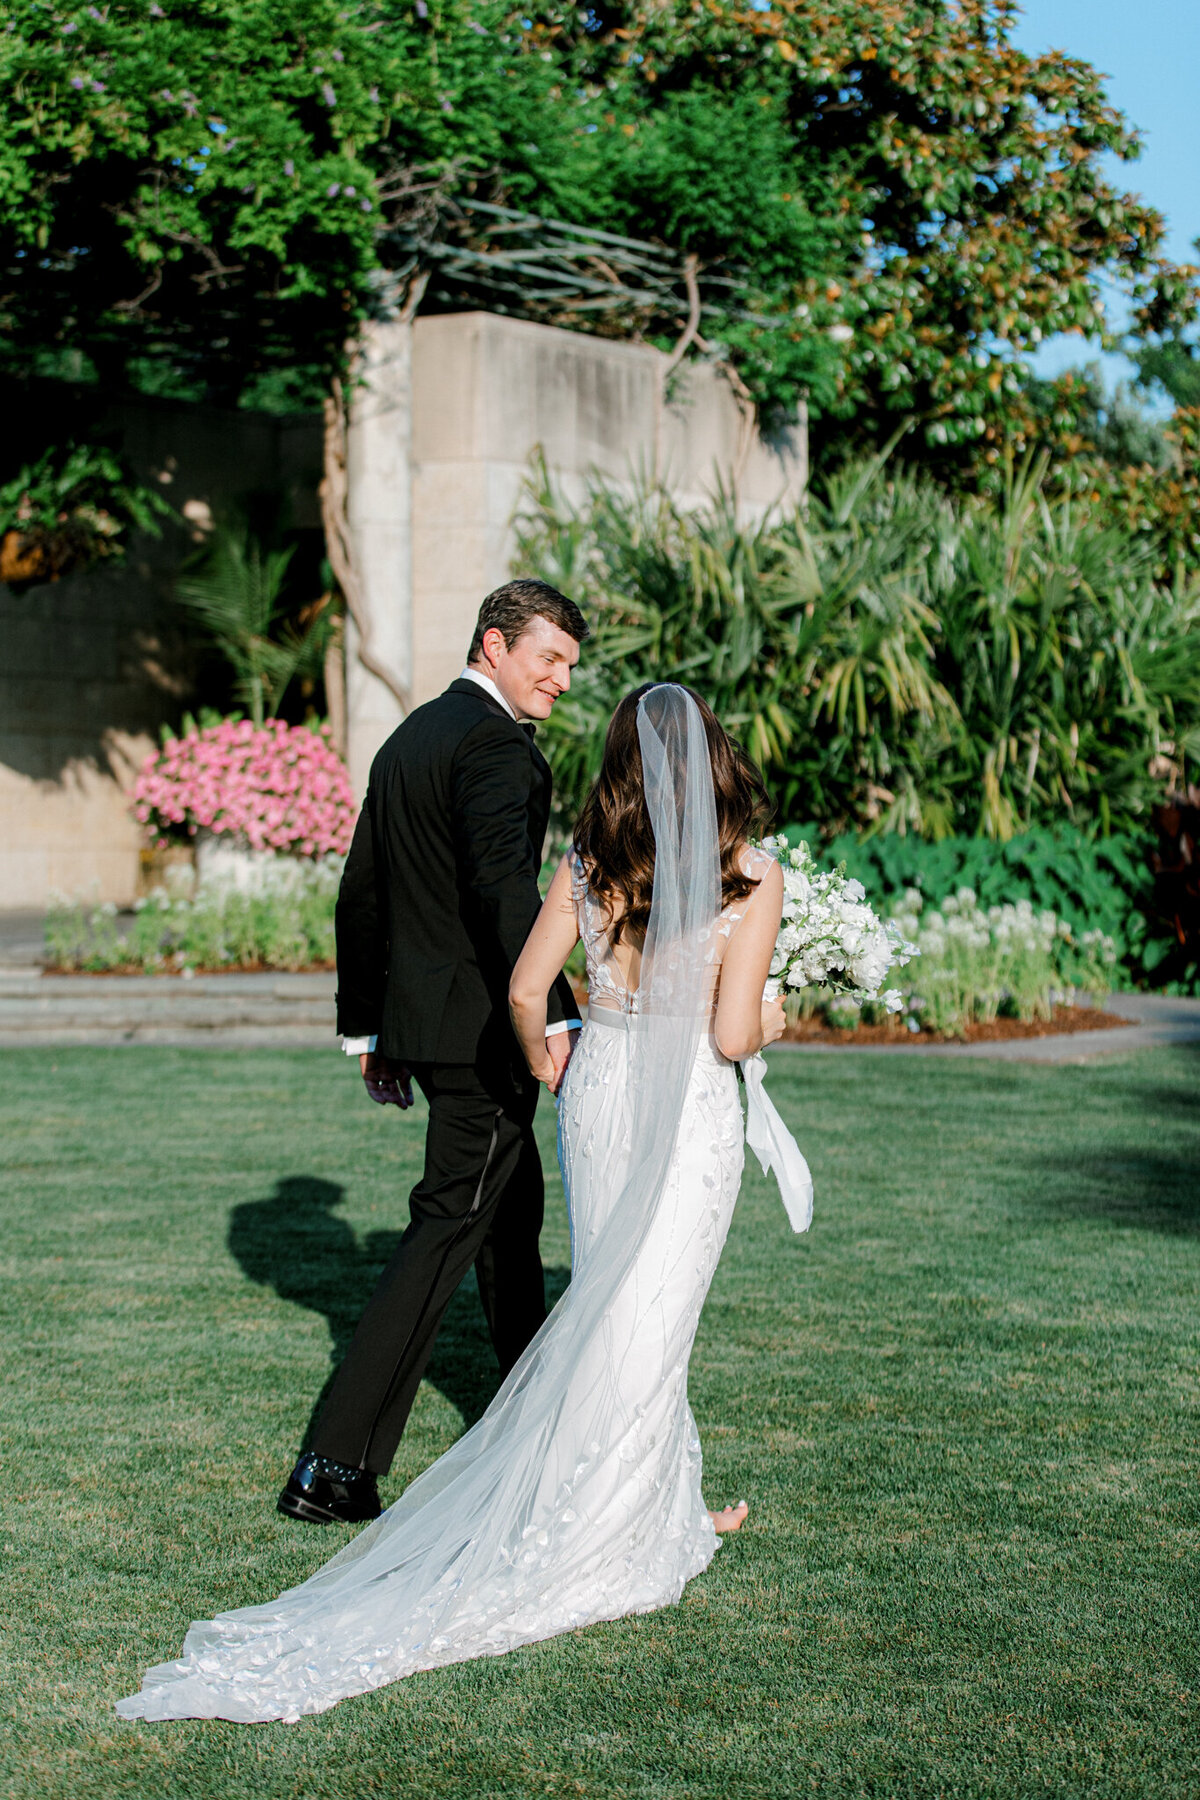 Gena & Matt's Wedding at the Dallas Arboretum | Dallas Wedding Photographer | Sami Kathryn Photography-162